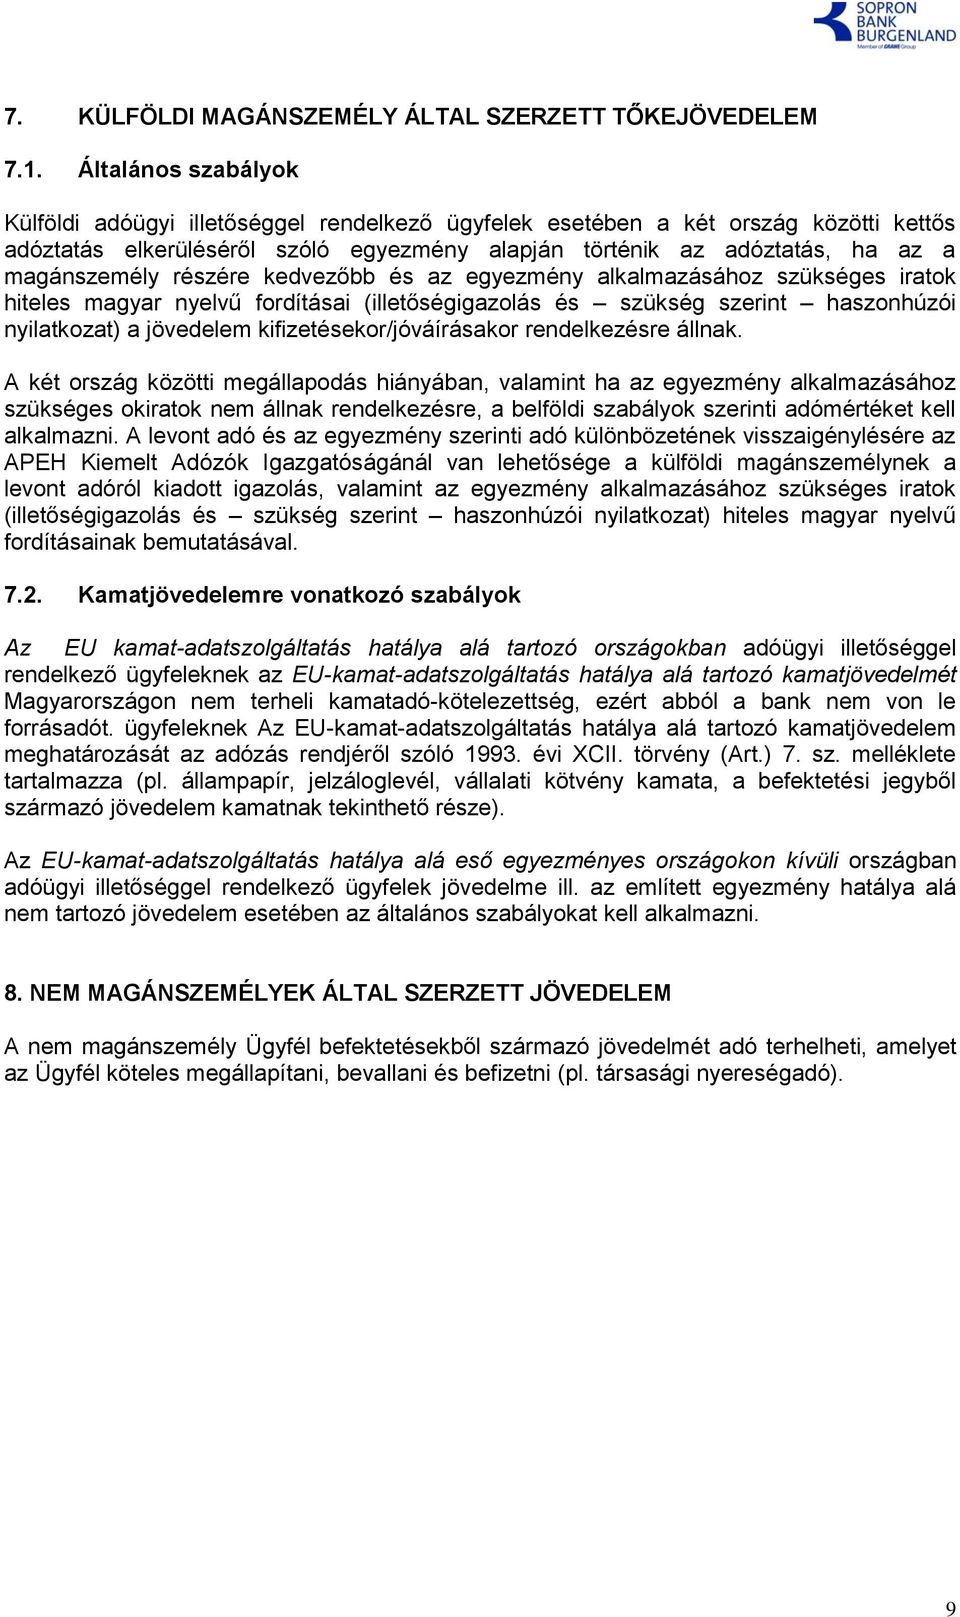 kedvezőbb és az egyezmény alkalmazásához szükséges iratok hiteles magyar nyelvű fordításai (illetőségigazolás és szükség szerint haszonhúzói nyilatkozat) a jövedelem kifizetésekor/jóváírásakor